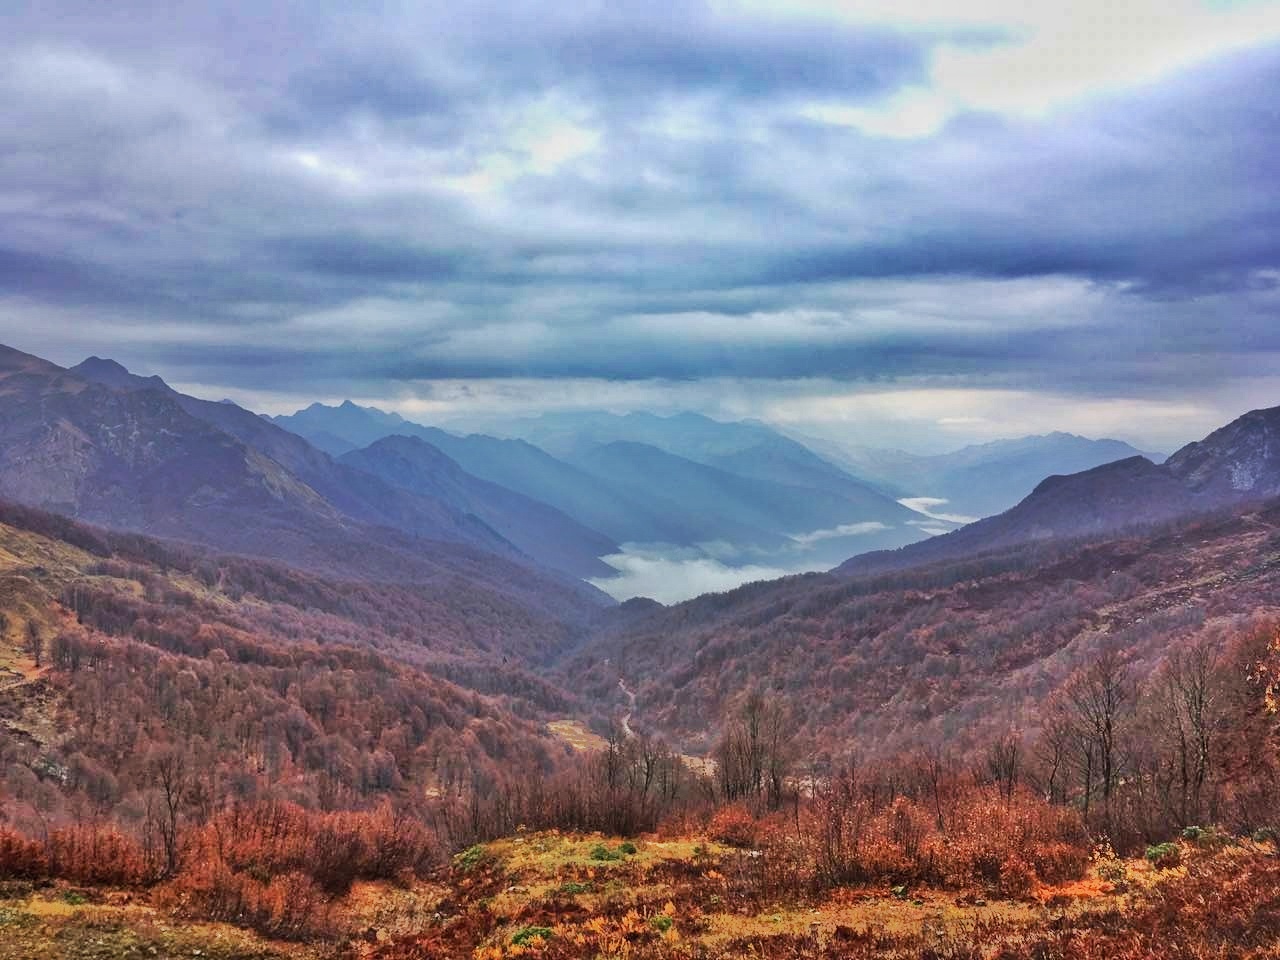 Перевал Пыв Абхазия высота